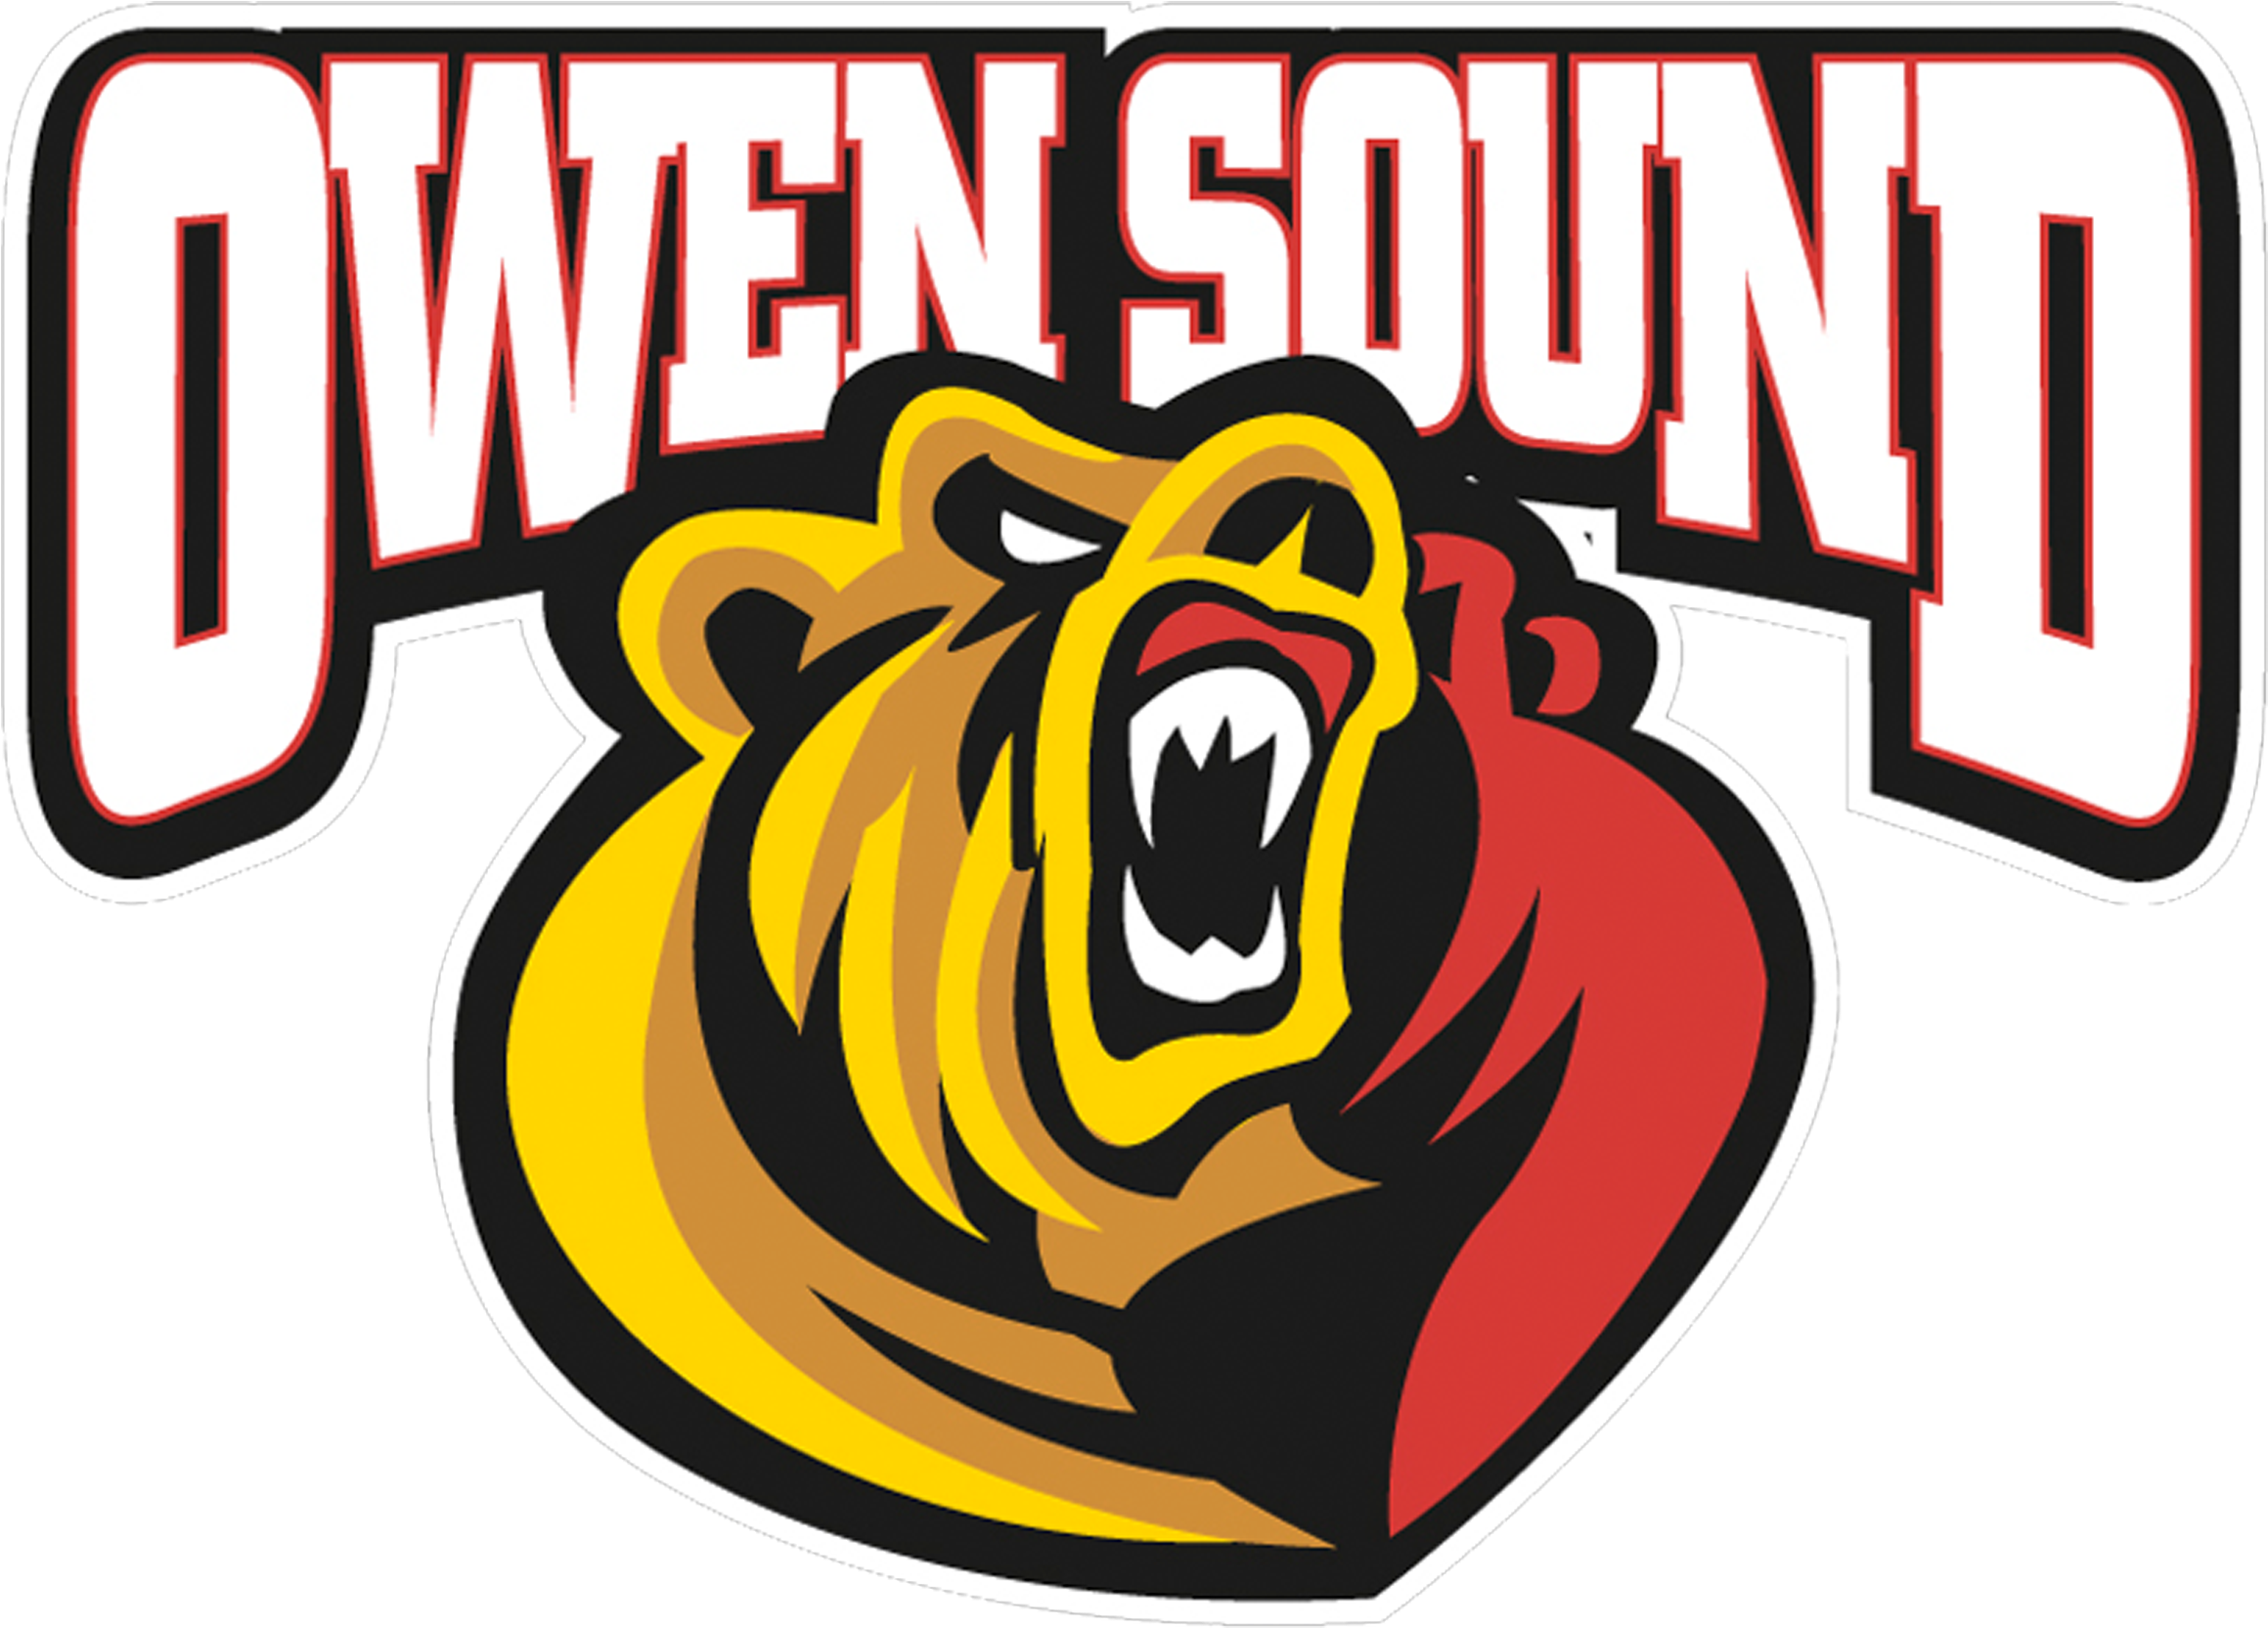 Attack Logo - Attack Hockey Owen Sound (3300x2550)